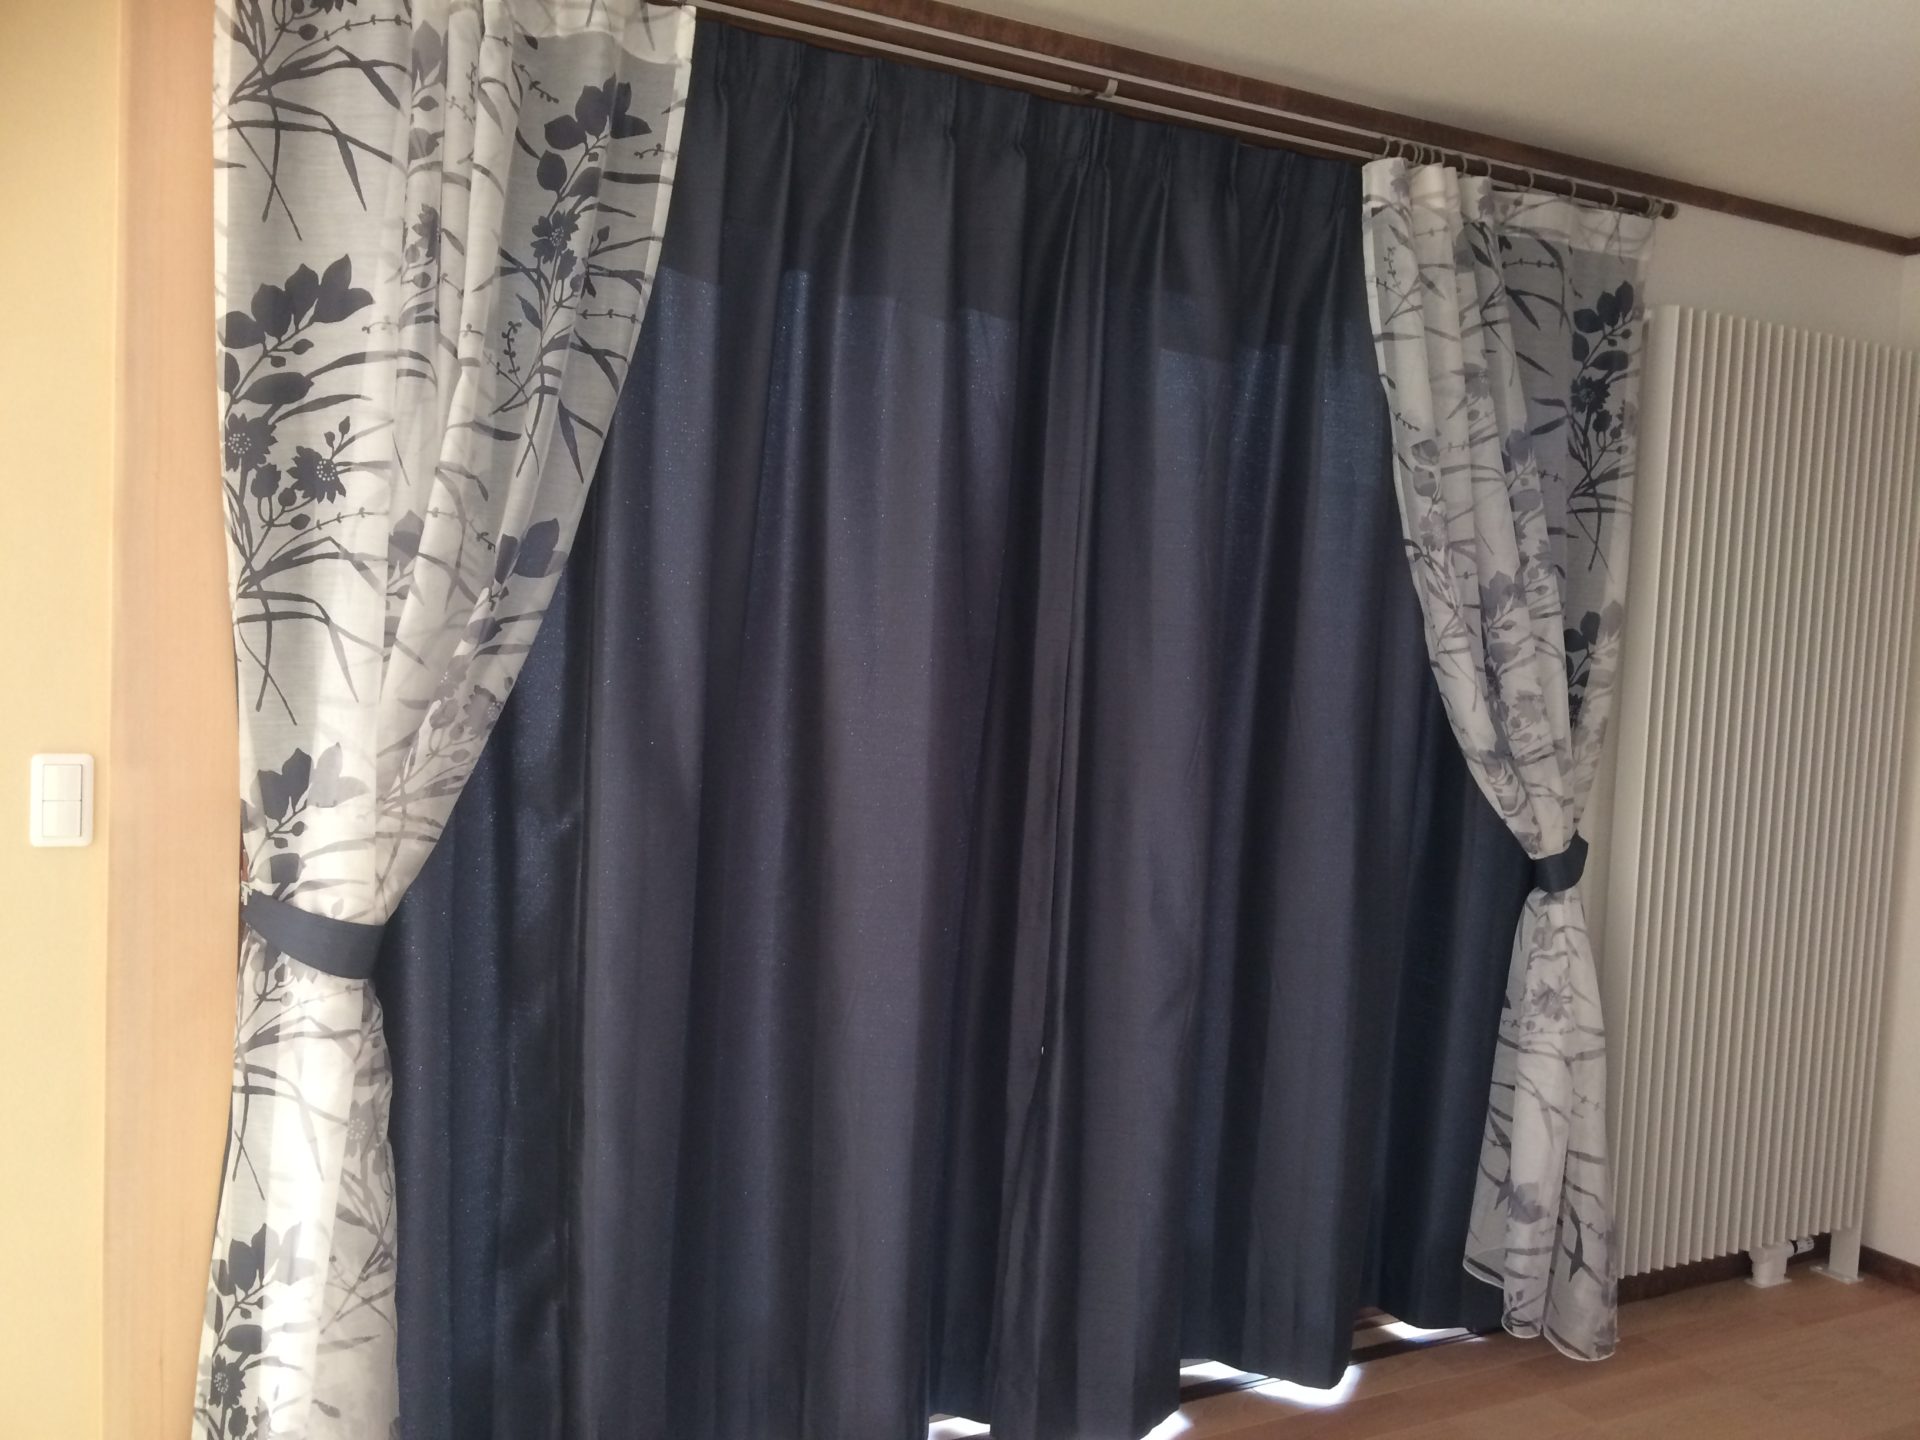 フロントレース | オーダーメイドカーテン専門店 カーテンで暮らしを楽しむお手伝い | 小松装飾